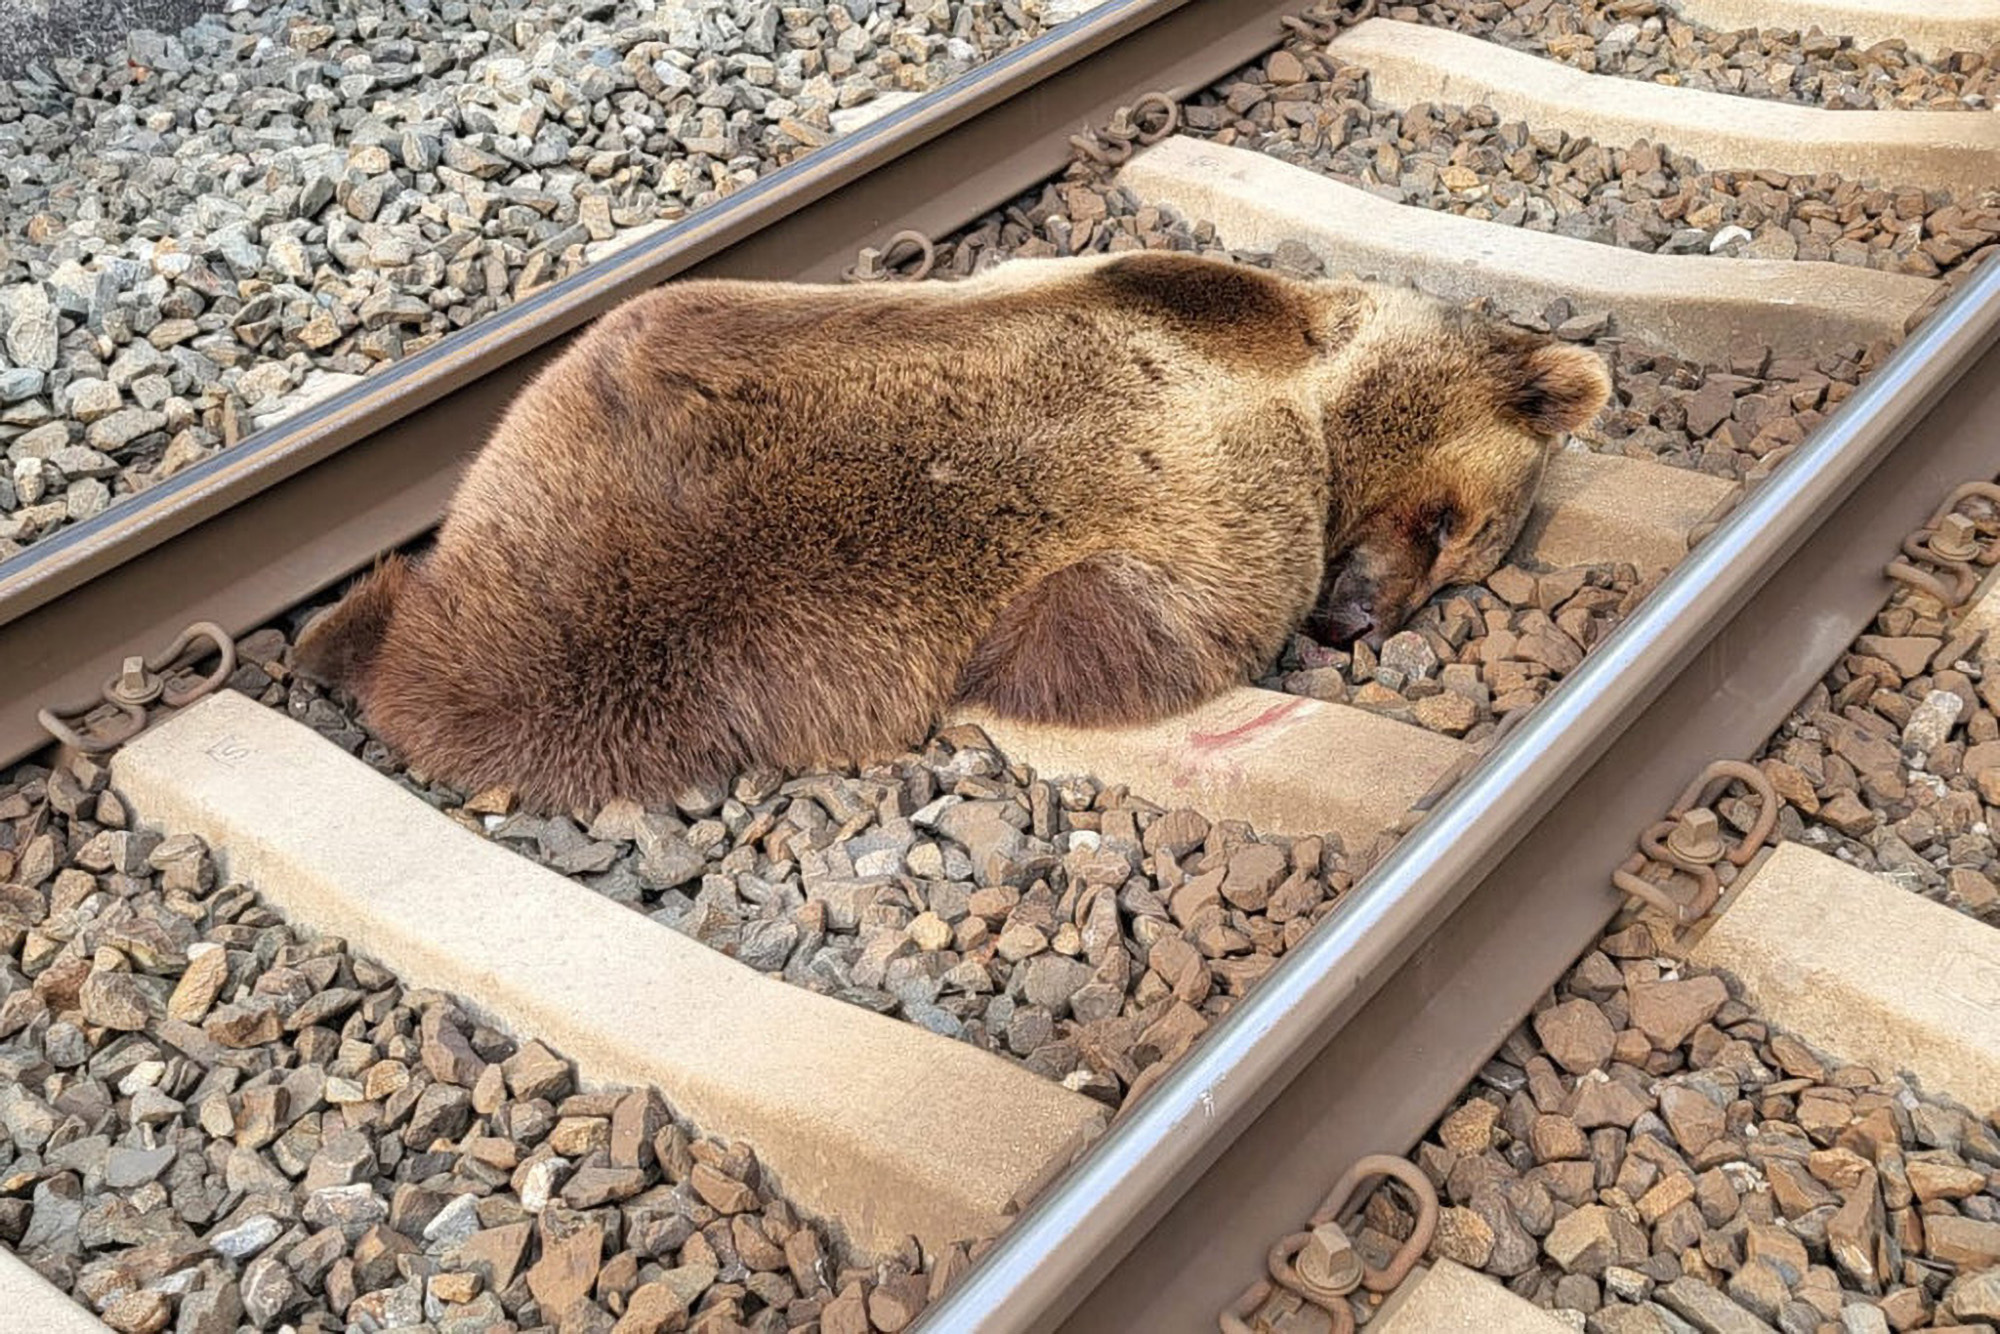  Wandering Brown Bear Dies On The Railway…